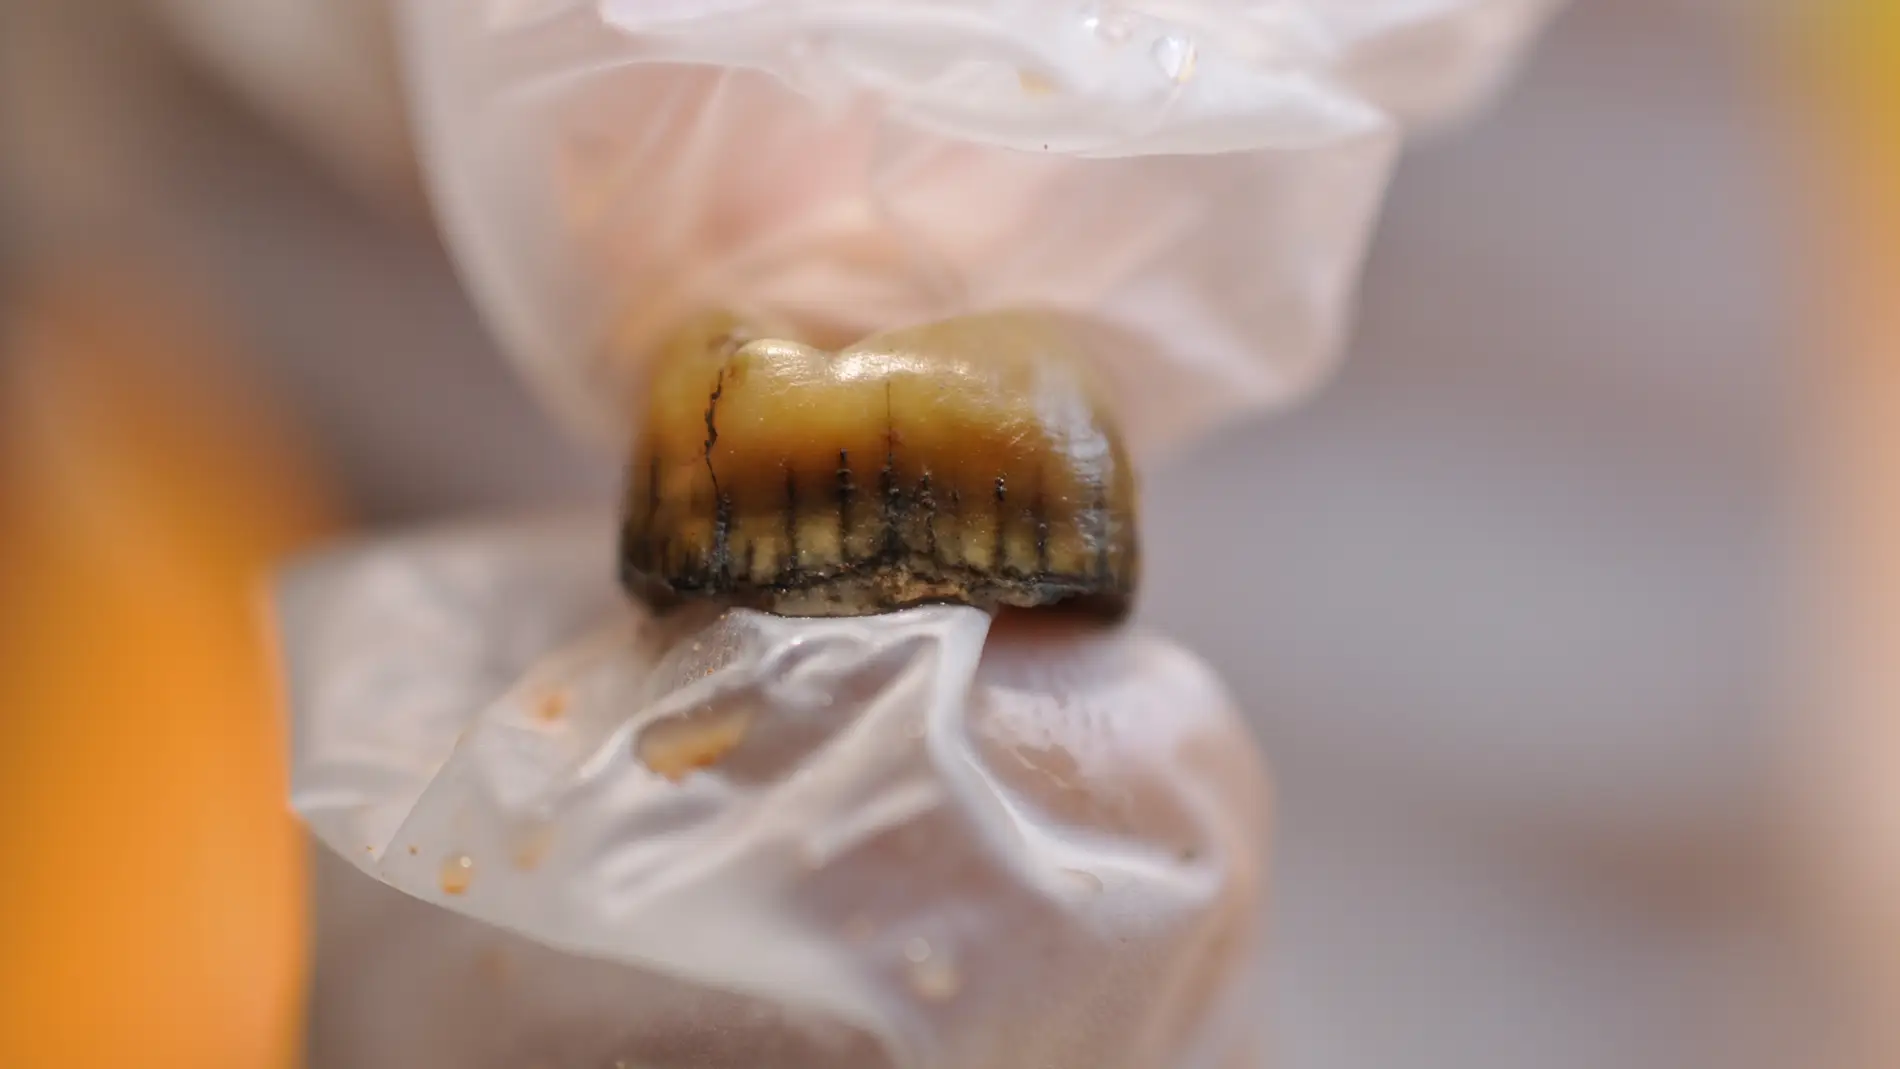 Detalle del diente neandertal recuperado en la Cova Simanya